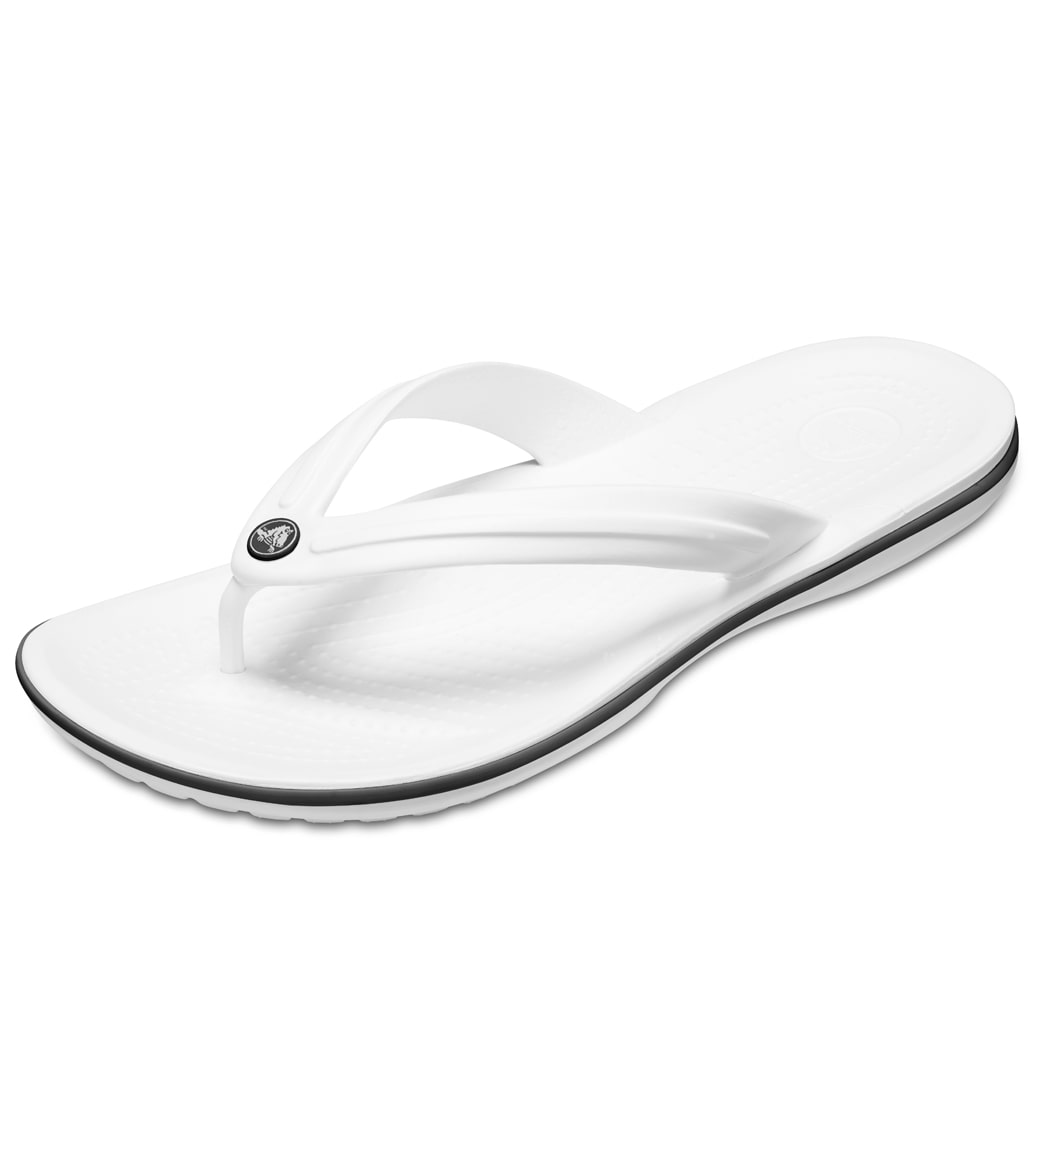 Crocs Crocband Flip Flops - White M13 Size Men's 13 - Swimoutlet.com